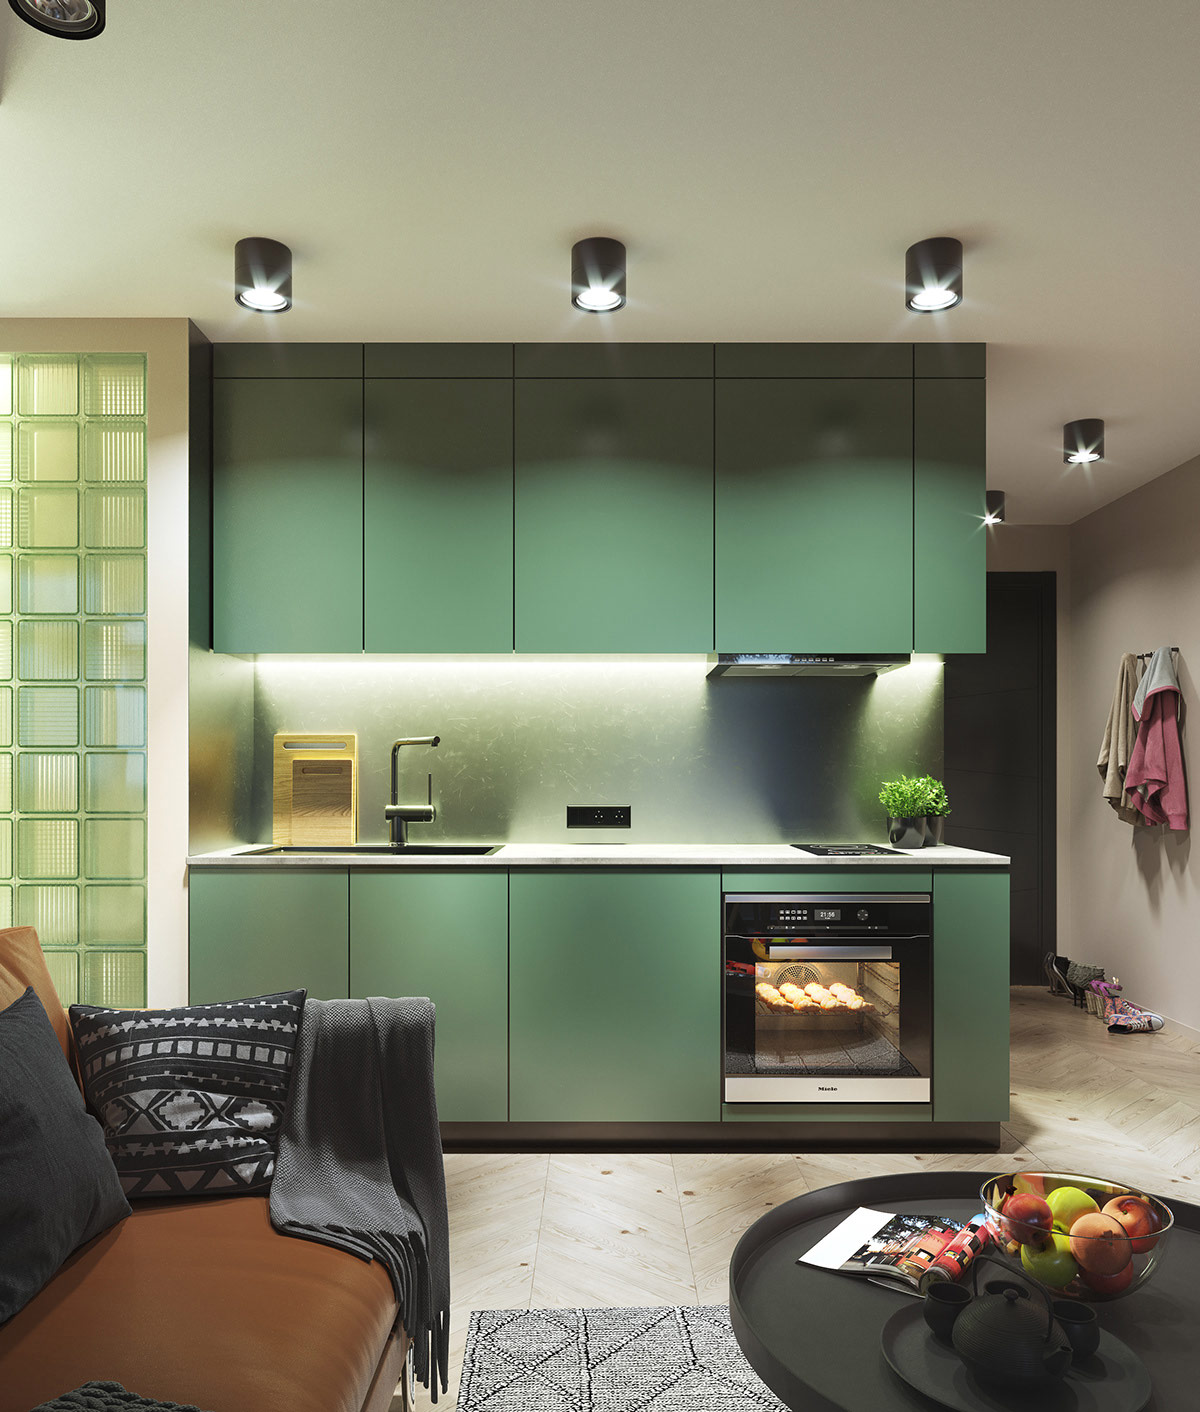 Bên cạnh nhà bếp màu xanh lá cây, gạch kính cùng tông màu tạo sự thống nhất, hài hòa cho tổng thể không gian sinh hoạt chung.